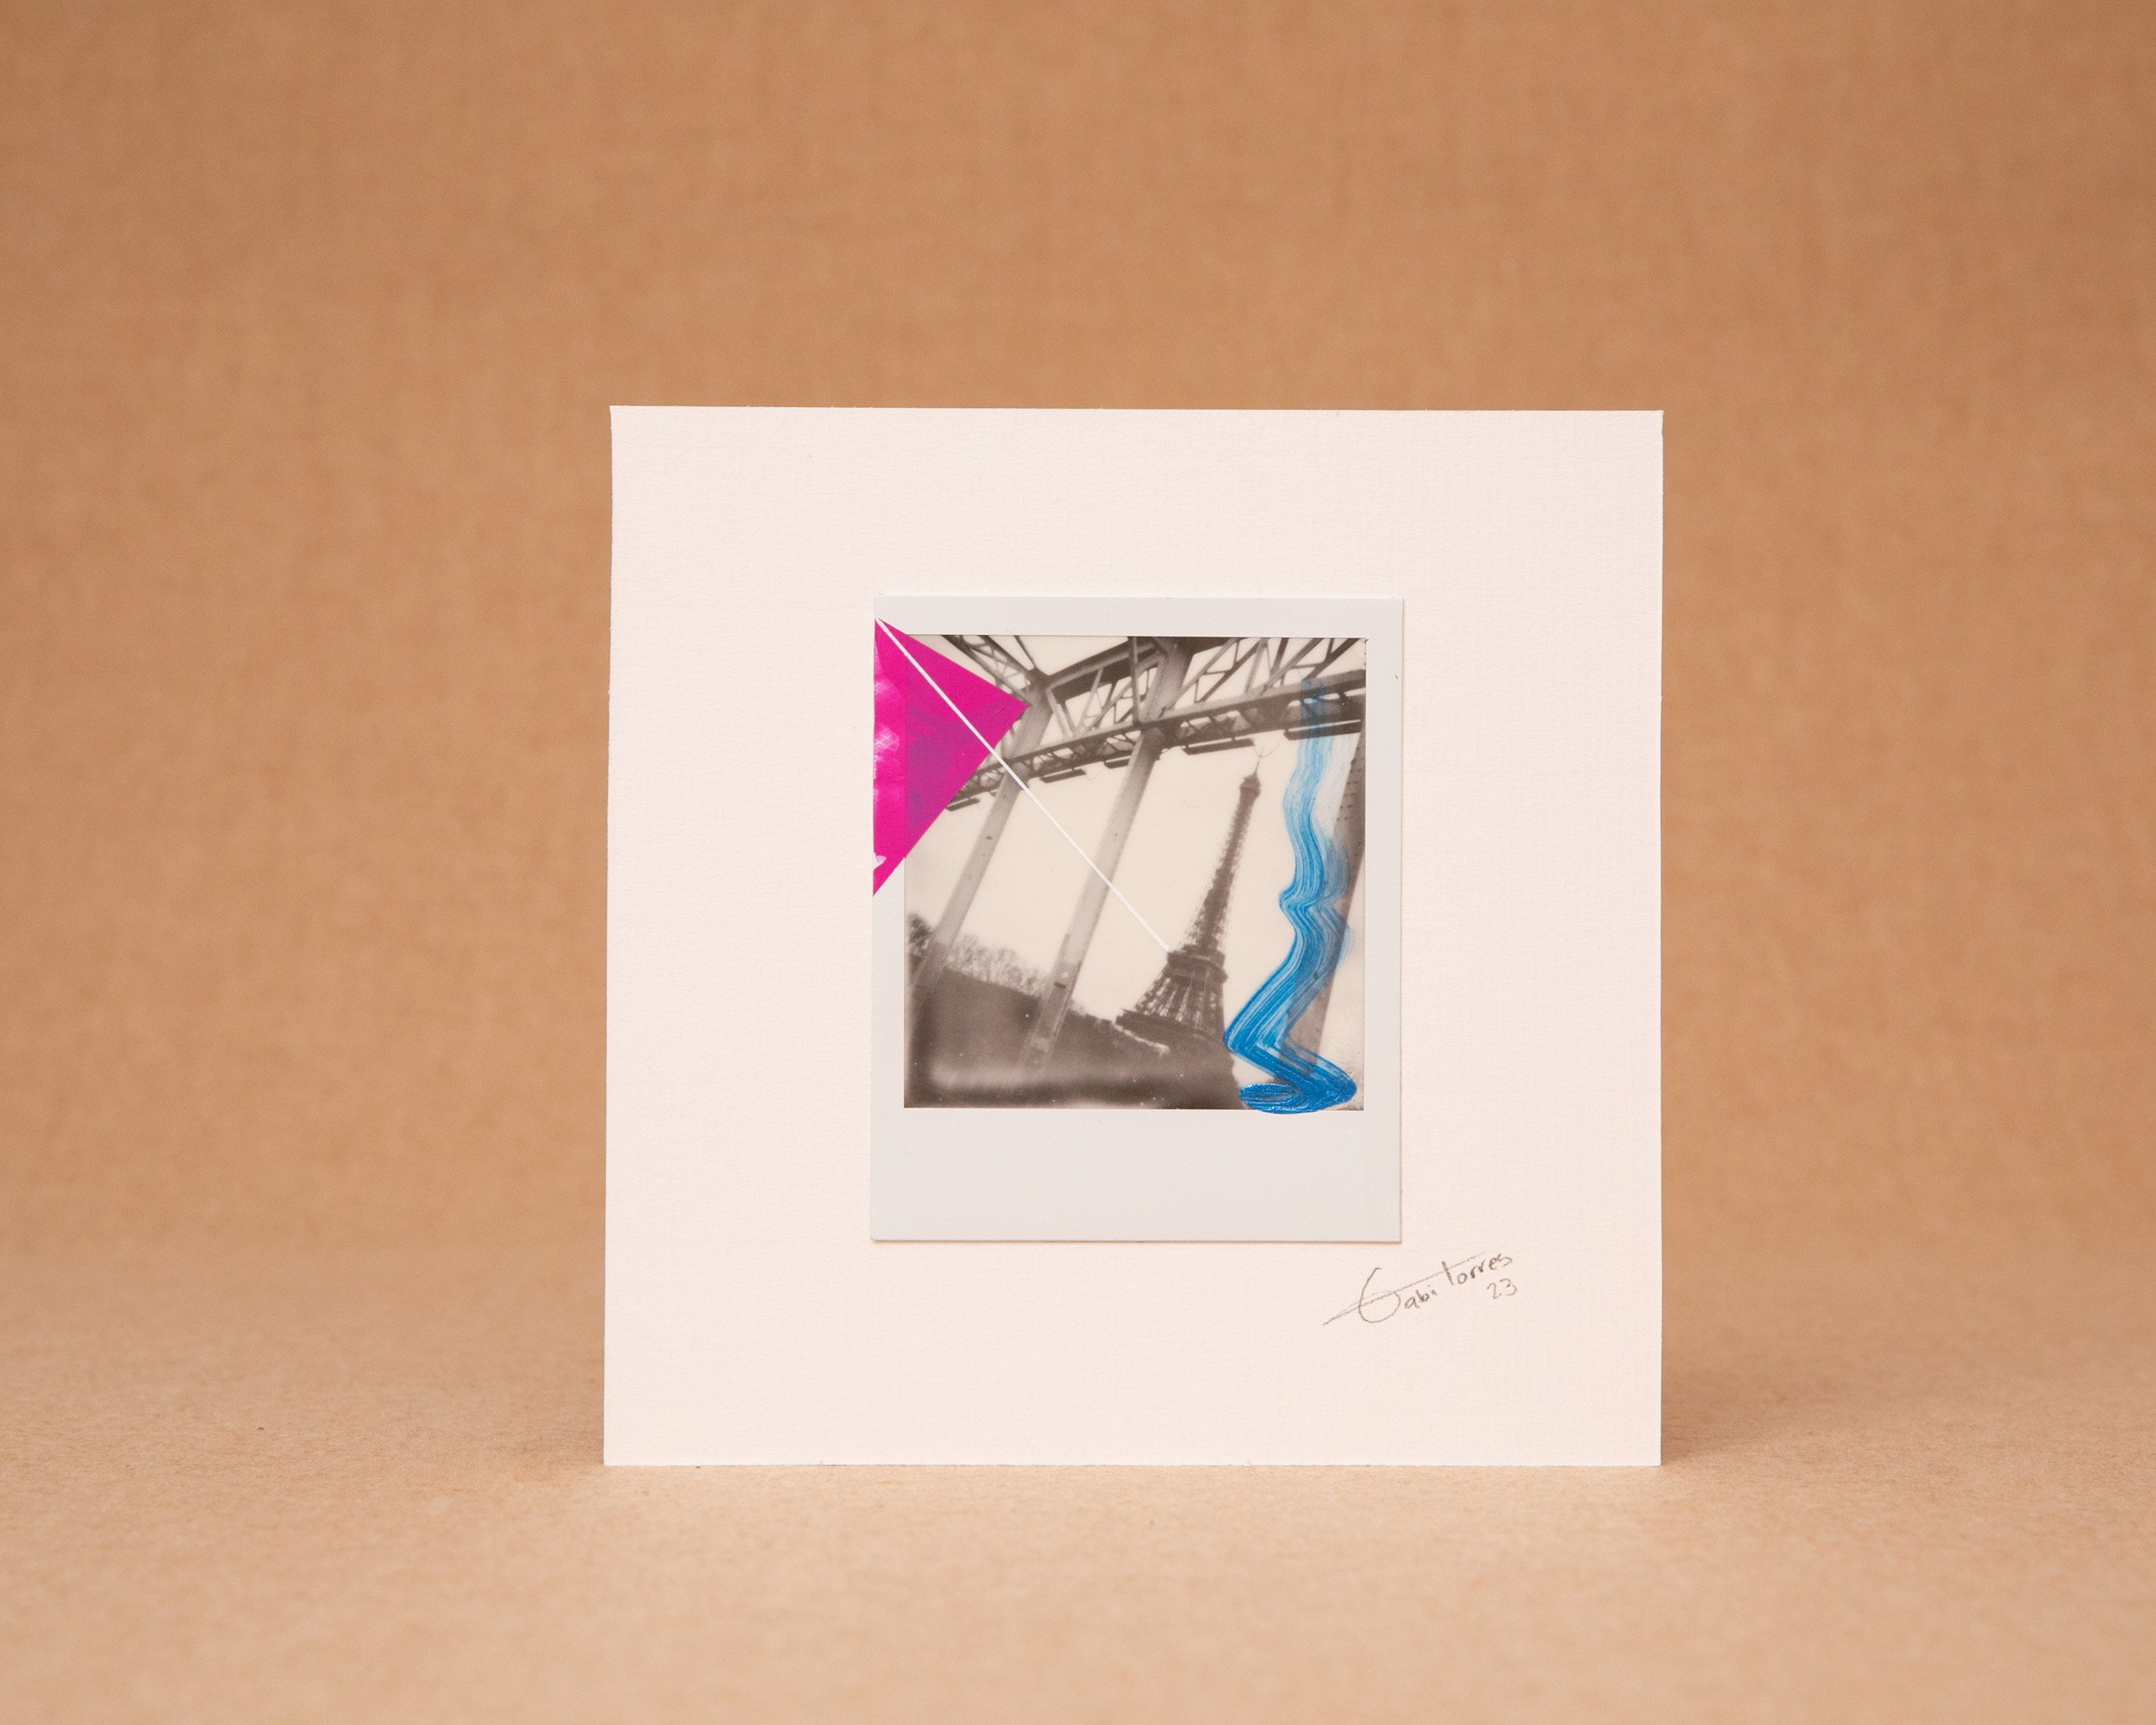 Abstract Painting on Polaroid - Paris £99.62